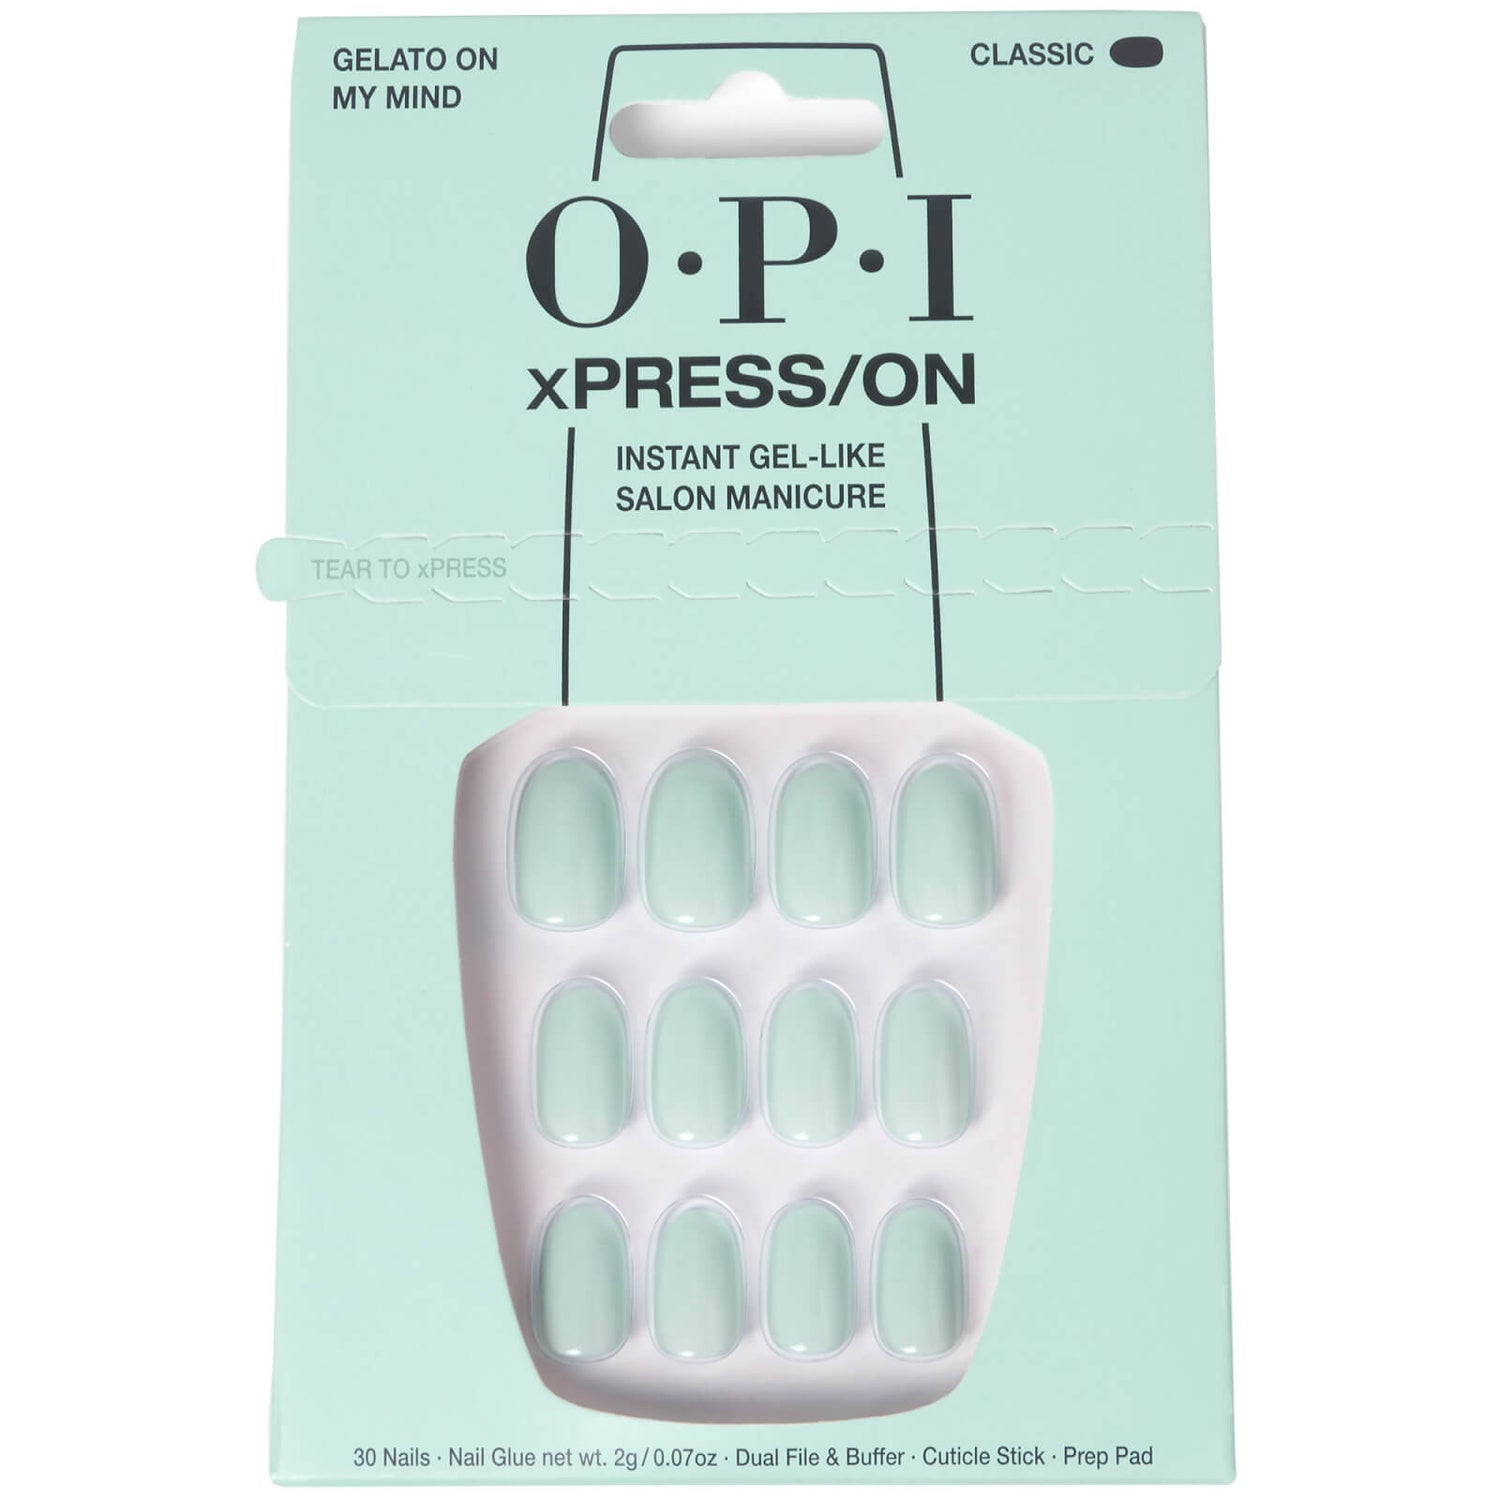 OPI xPRESS/ON - Gelato on My Mind Press On Nails Gel-Like Salon Manicure